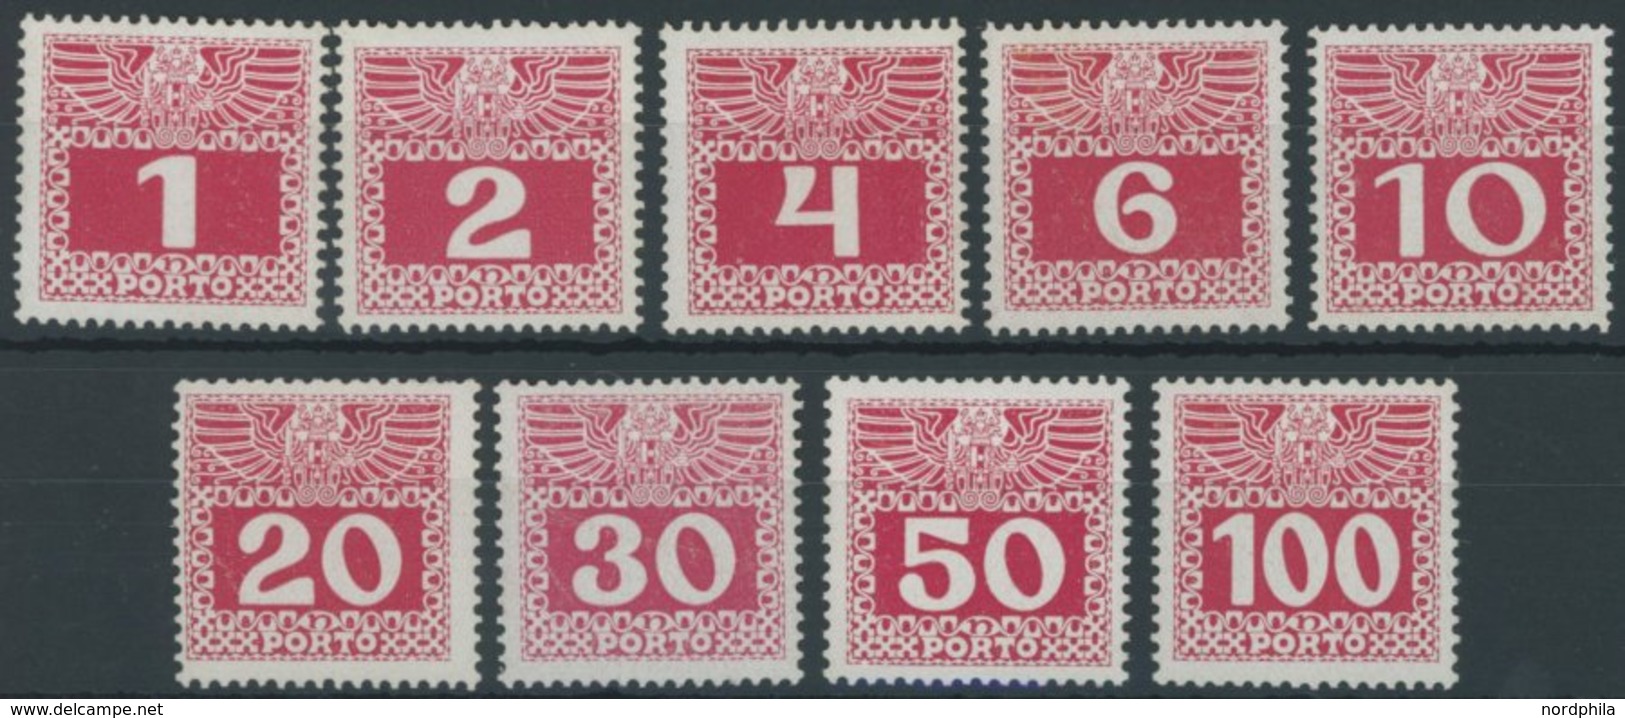 PORTOMARKEN P 34-44x **, 1908, 1 - 100 H. Lebhaftlilarot, Kreidepapier, Postfrischer Prachtsatz (9 Werte), Mi. 380.- - Impuestos